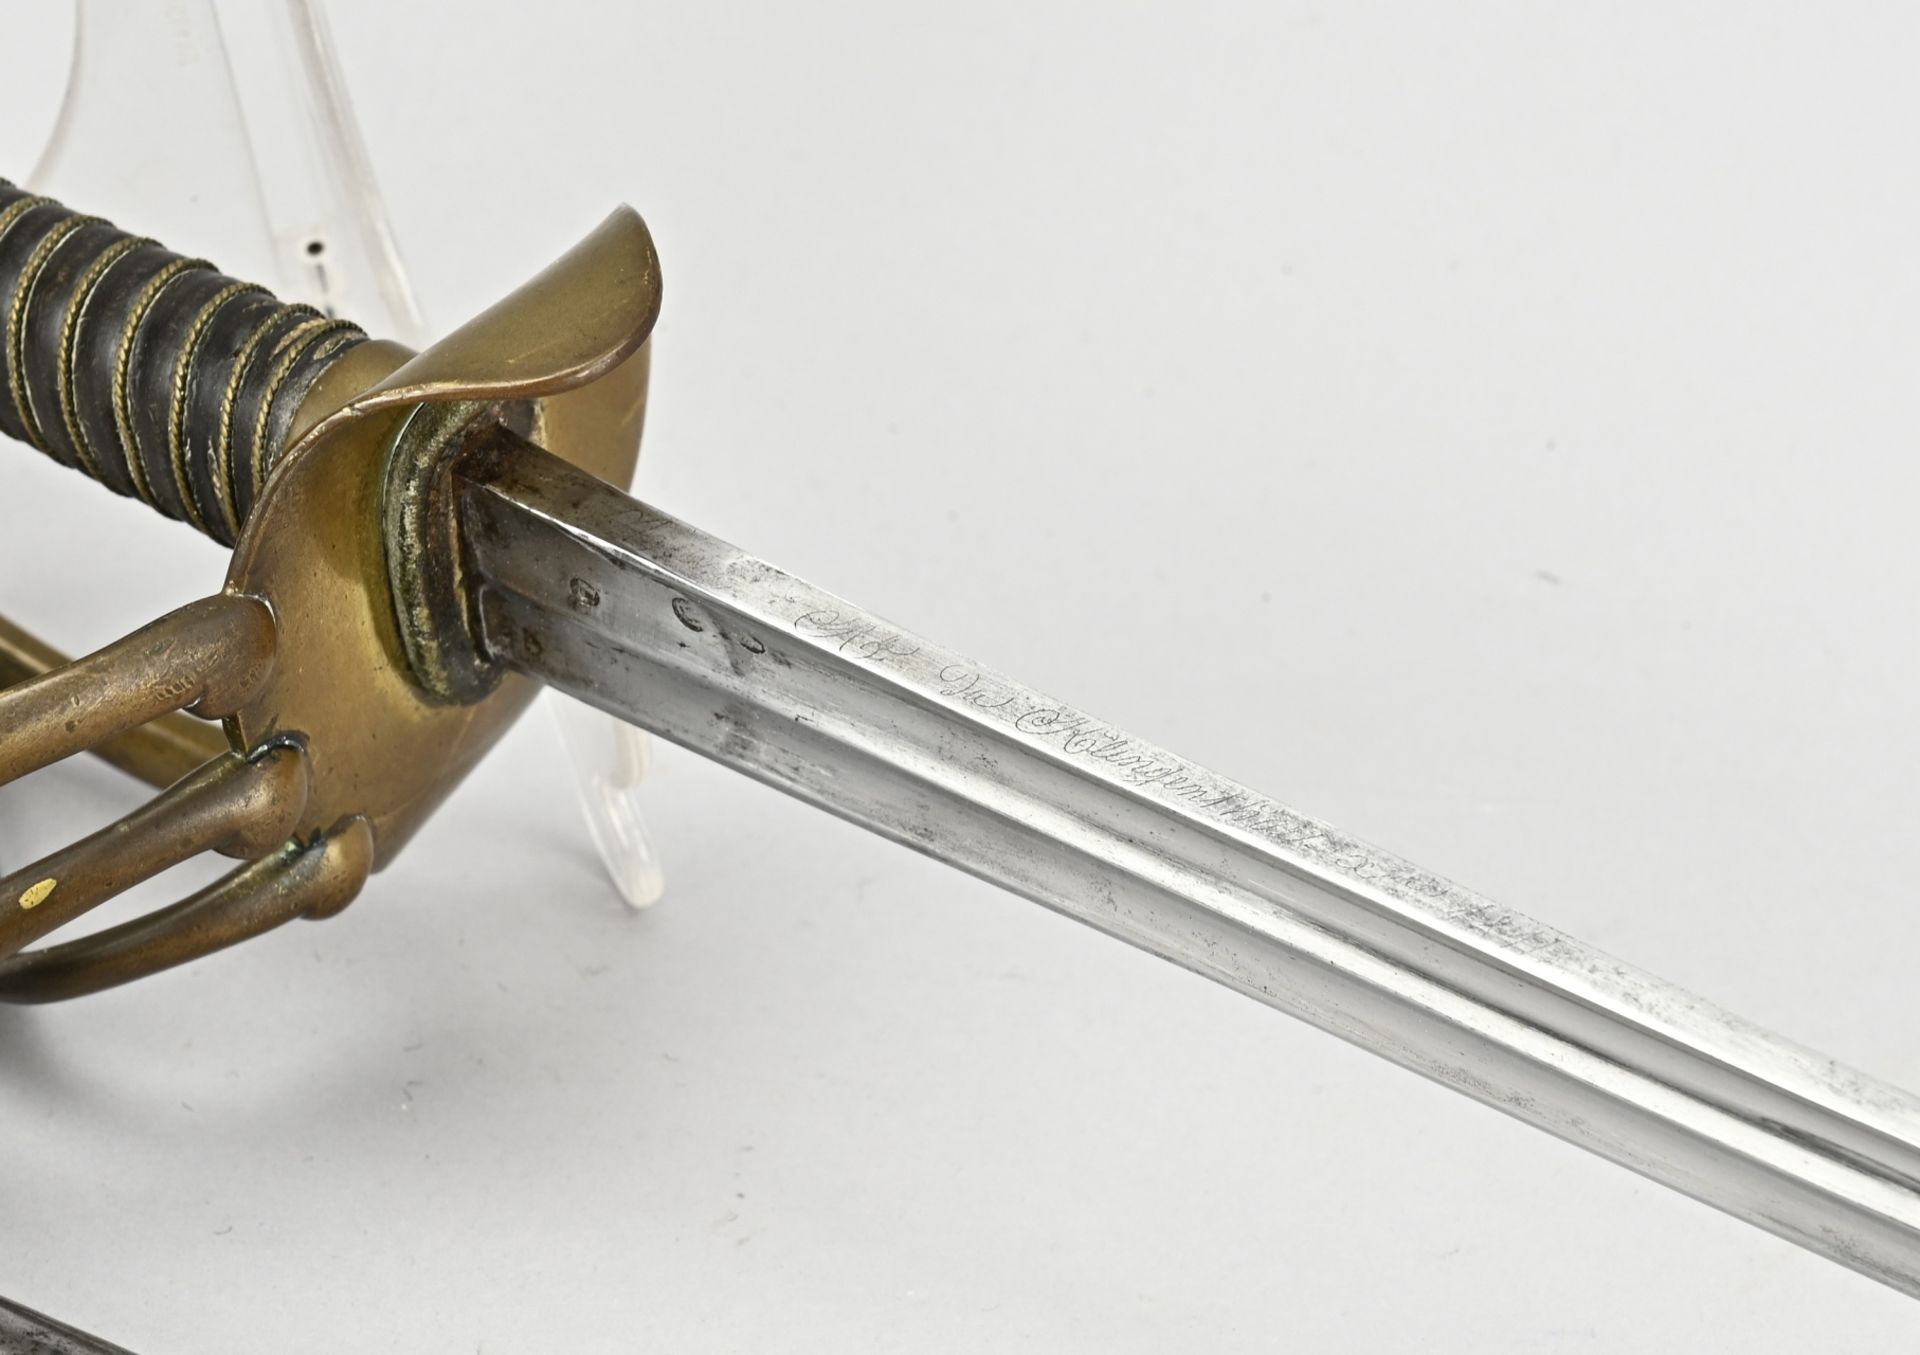 Antique sabre, L 118 cm. - Image 3 of 3